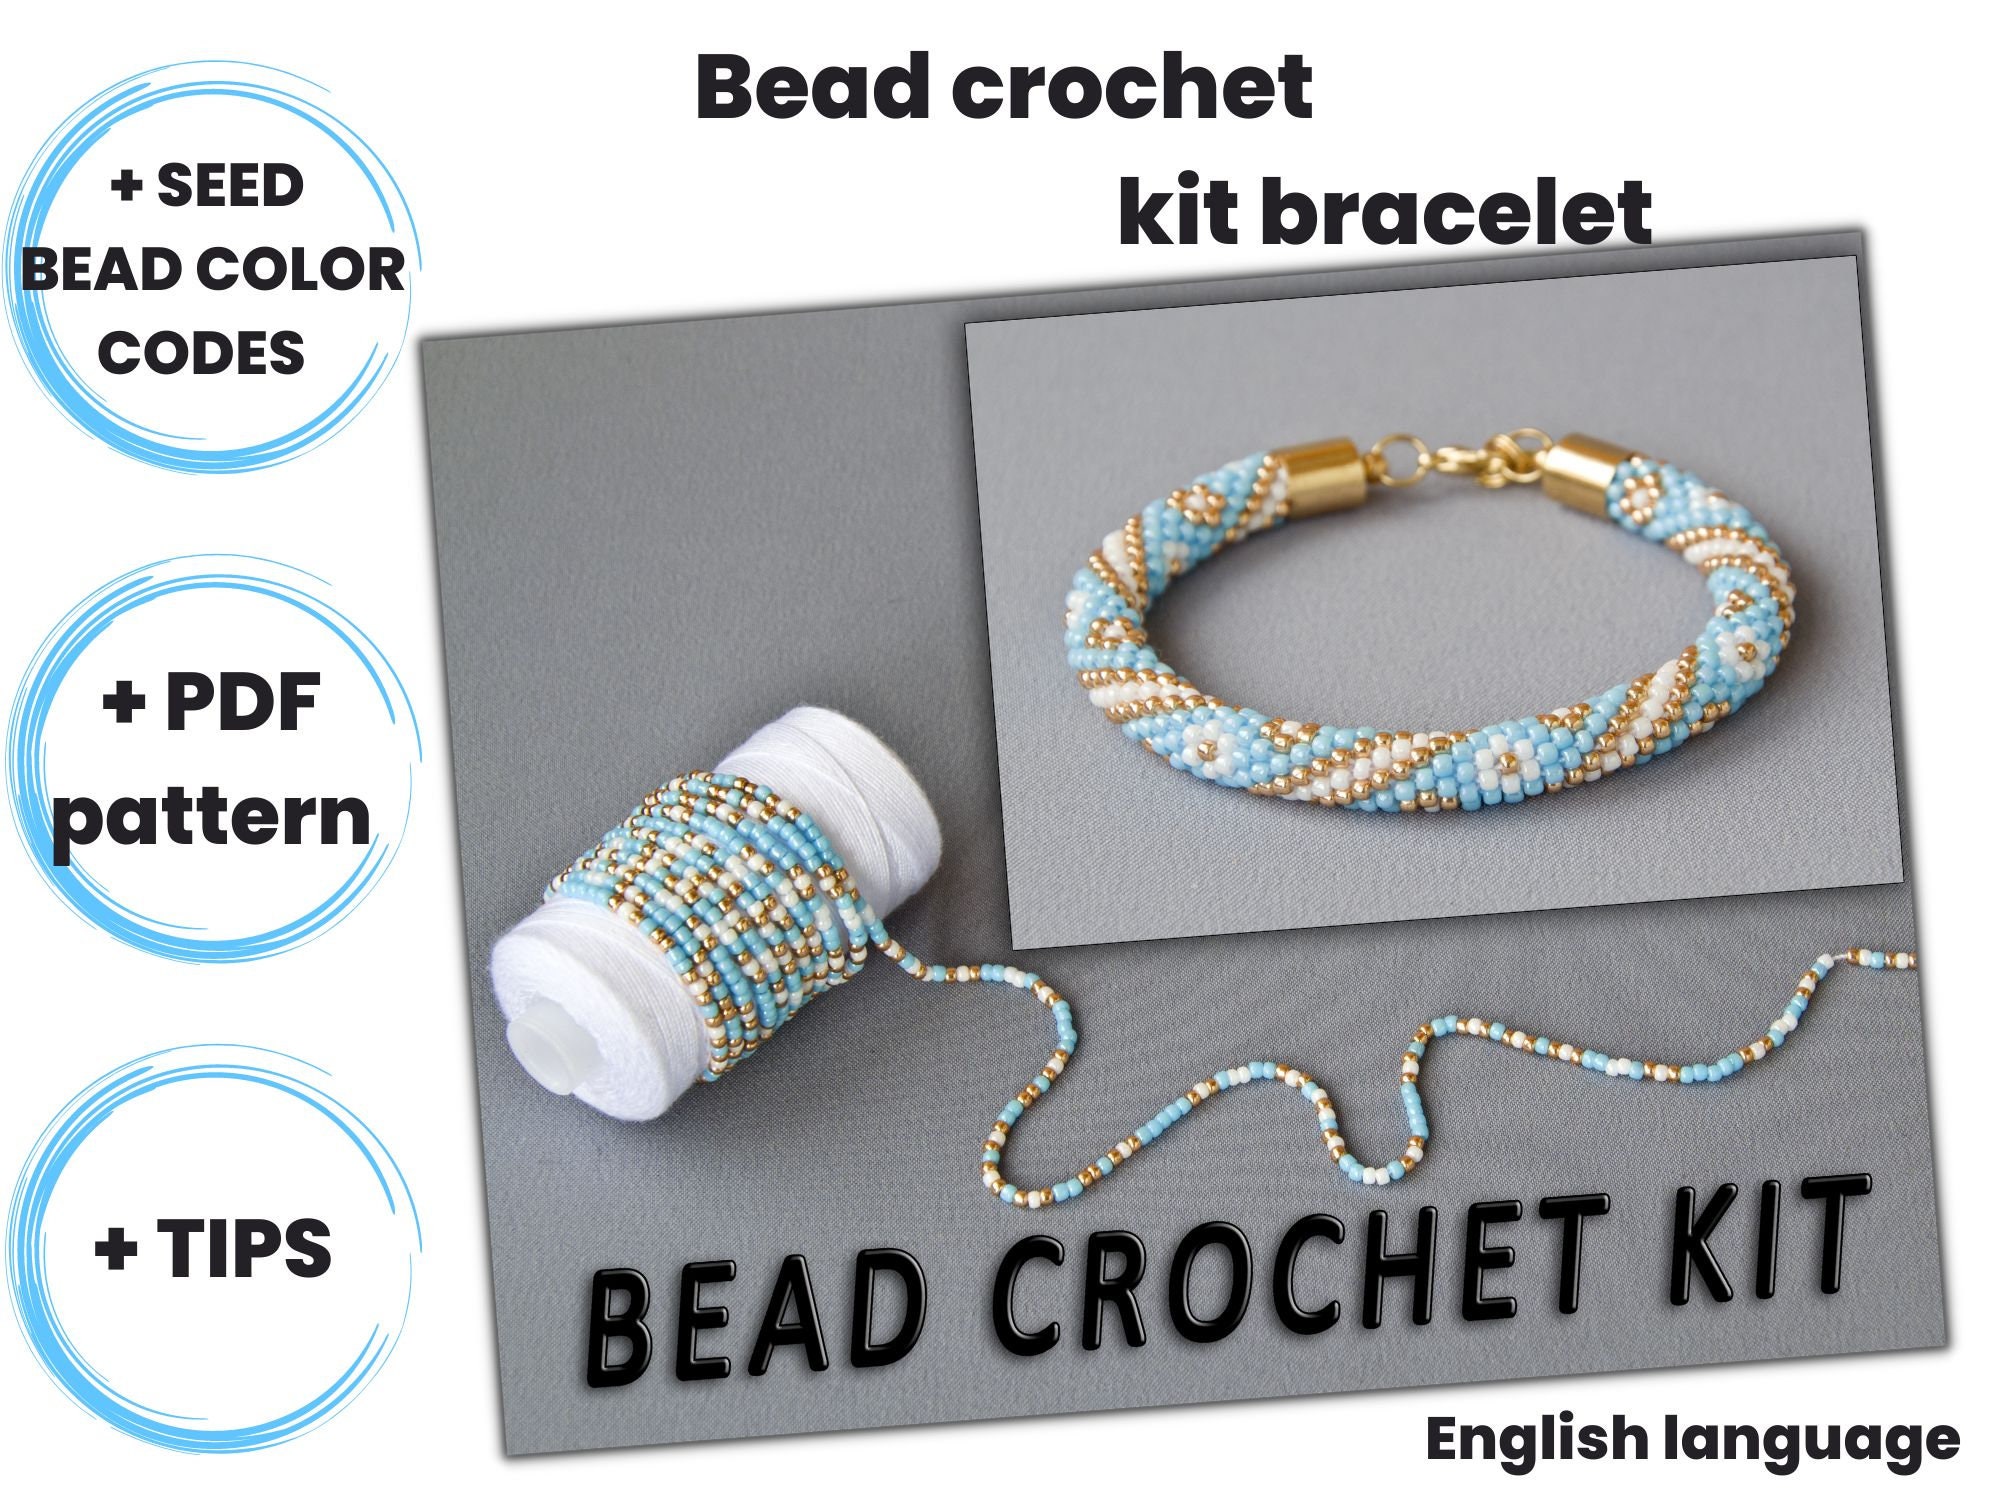 Personalized Gift for Kids, DIY Stretchy Bracelet Craft Kit, Bracelet Making  Kit, Activity Box, Friendship Bracelets, Jewelry Making 